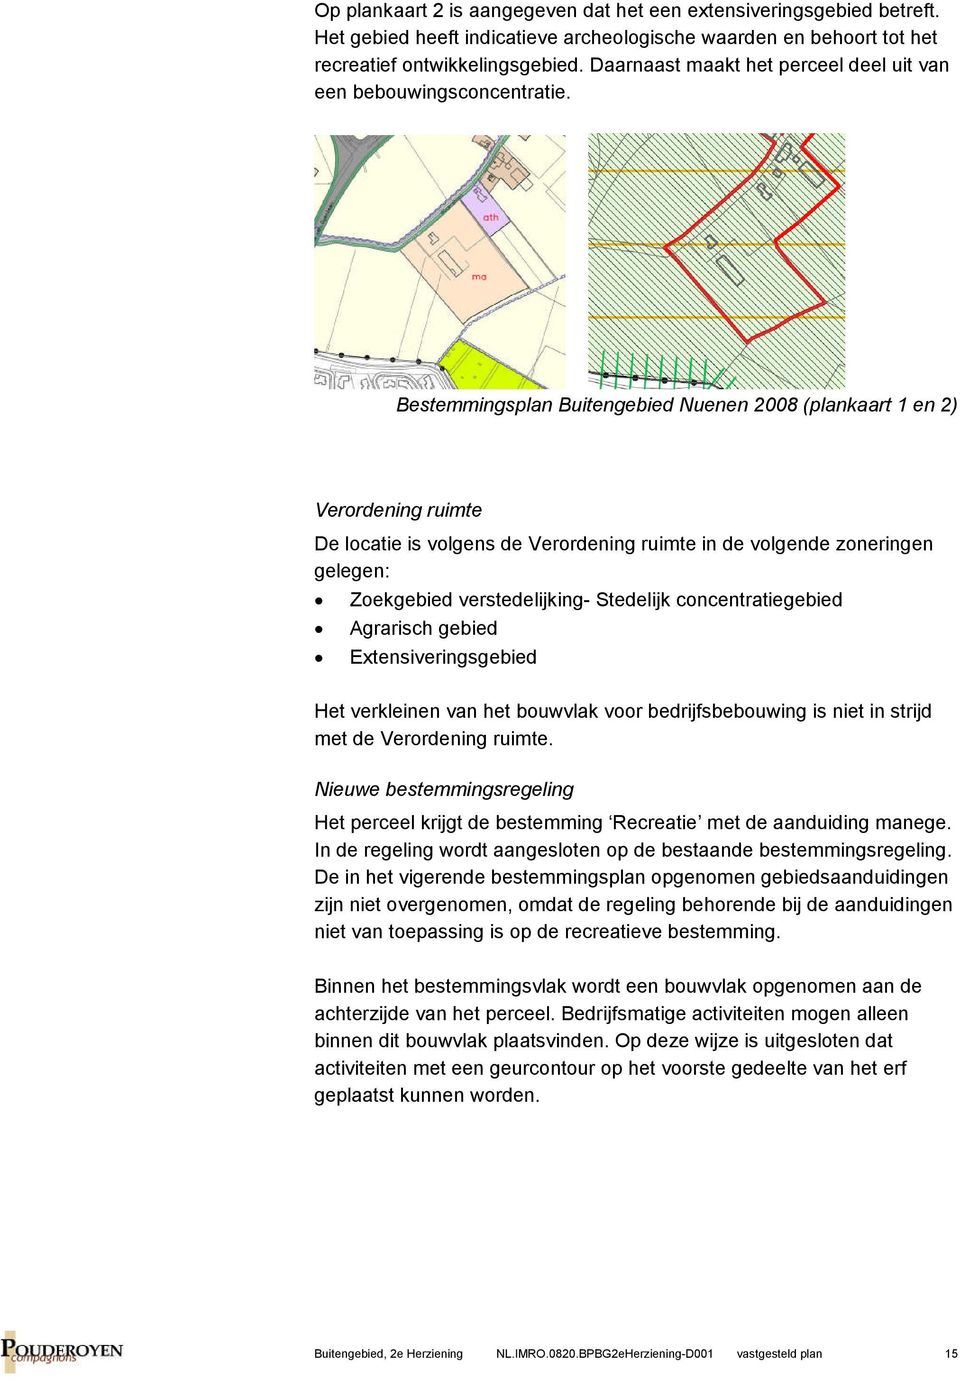 Bestemmingsplan Buitengebied Nuenen 2008 (plankaart 1 en 2) Verordening ruimte De locatie is volgens de Verordening ruimte in de volgende zoneringen gelegen: Zoekgebied verstedelijking- Stedelijk